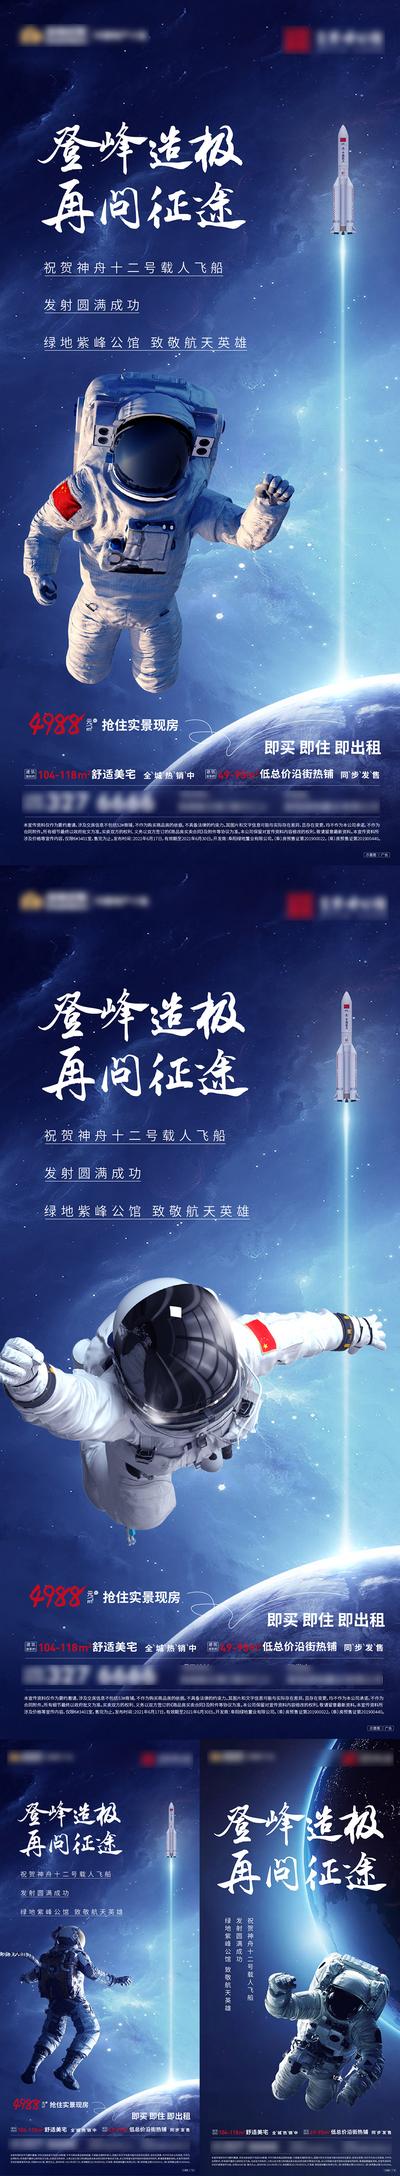 南门网 海报 地产 神州飞天 宇航员 太空人 火箭 系列